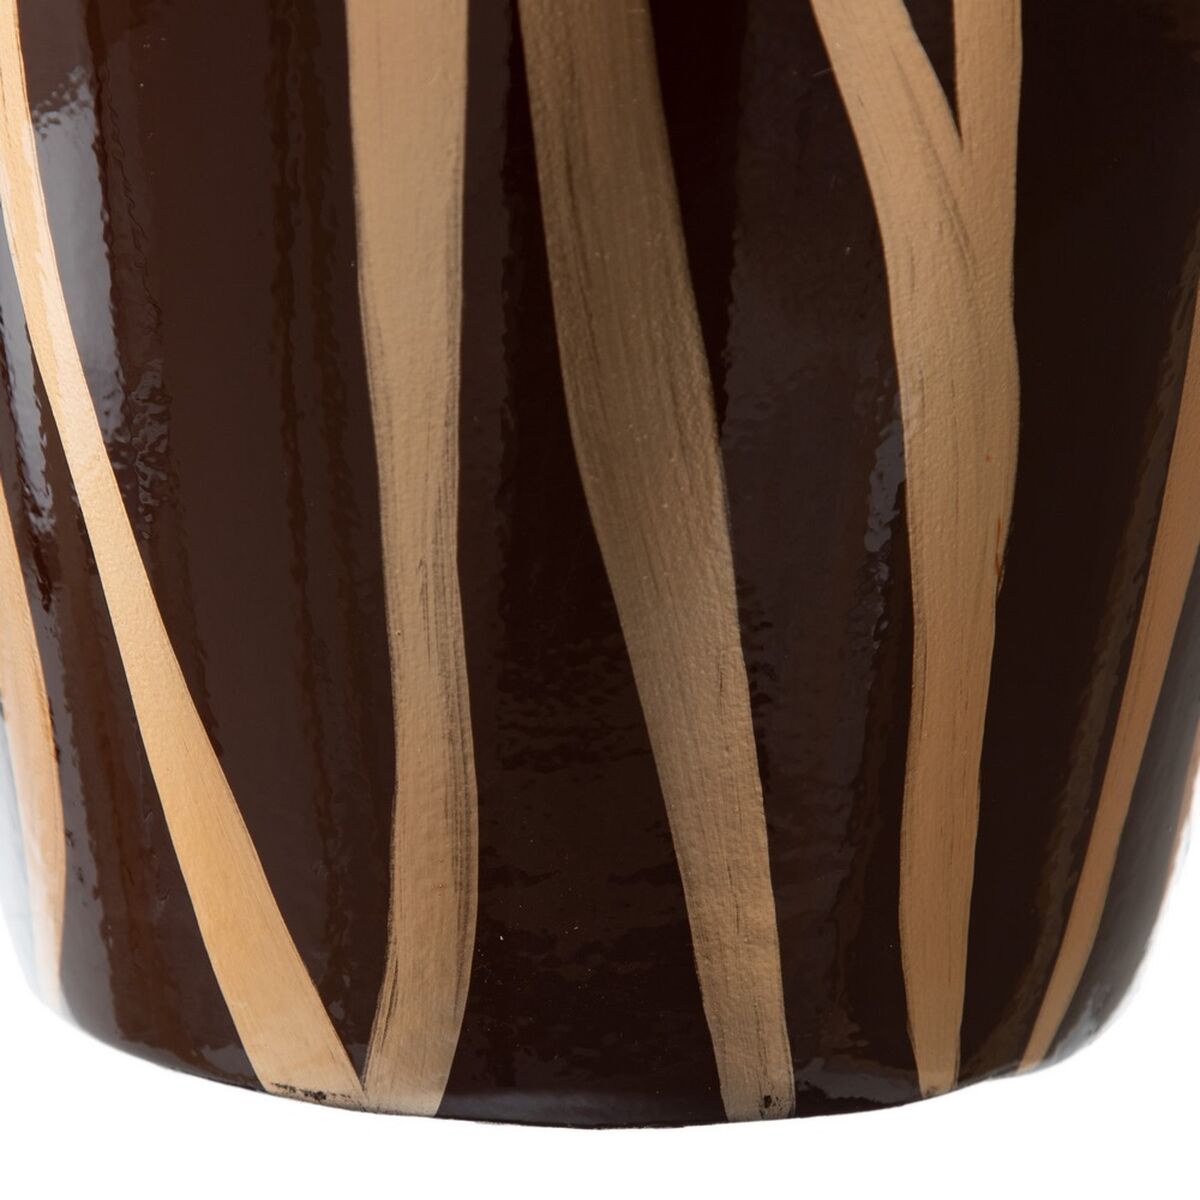 Vase 21 x 21 x 58,5 cm Zebra Ceramic Golden Brown